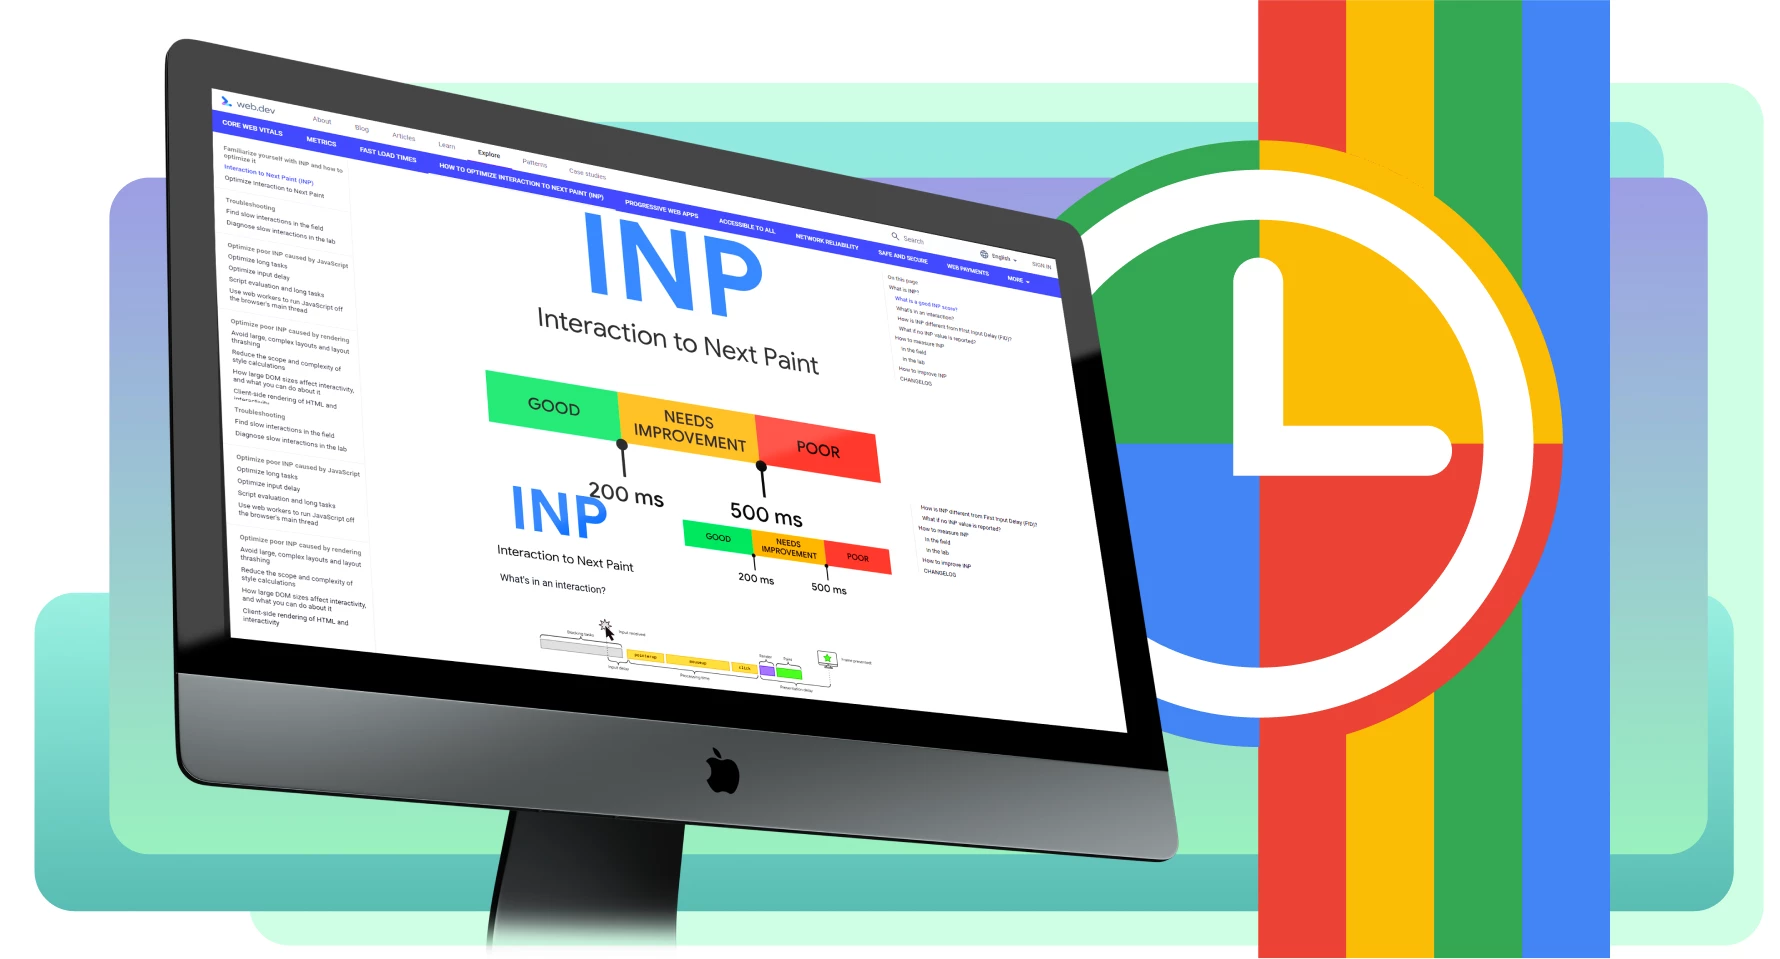 O seu sítio Web tem uma má pontuação INP: o que fazer?